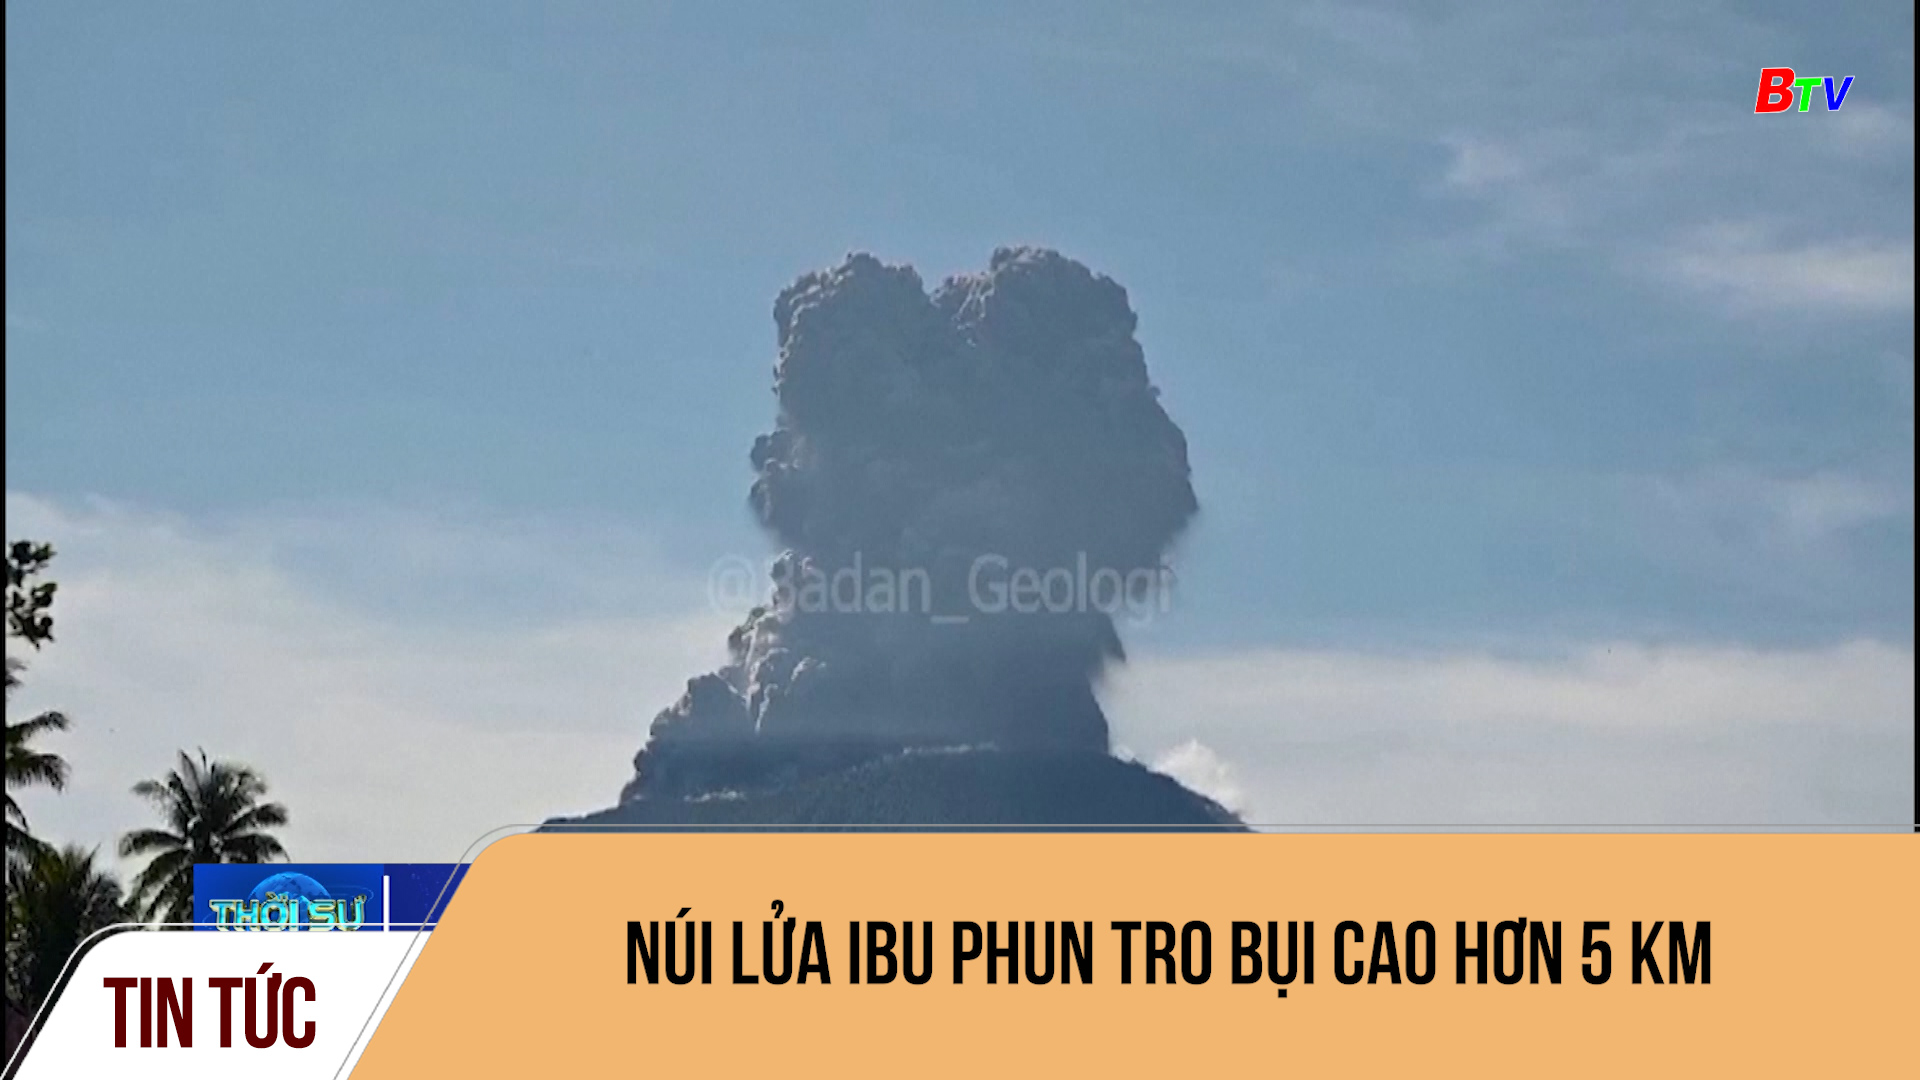 Núi lửa Ibu phun tro bụi cao hơn 5 km